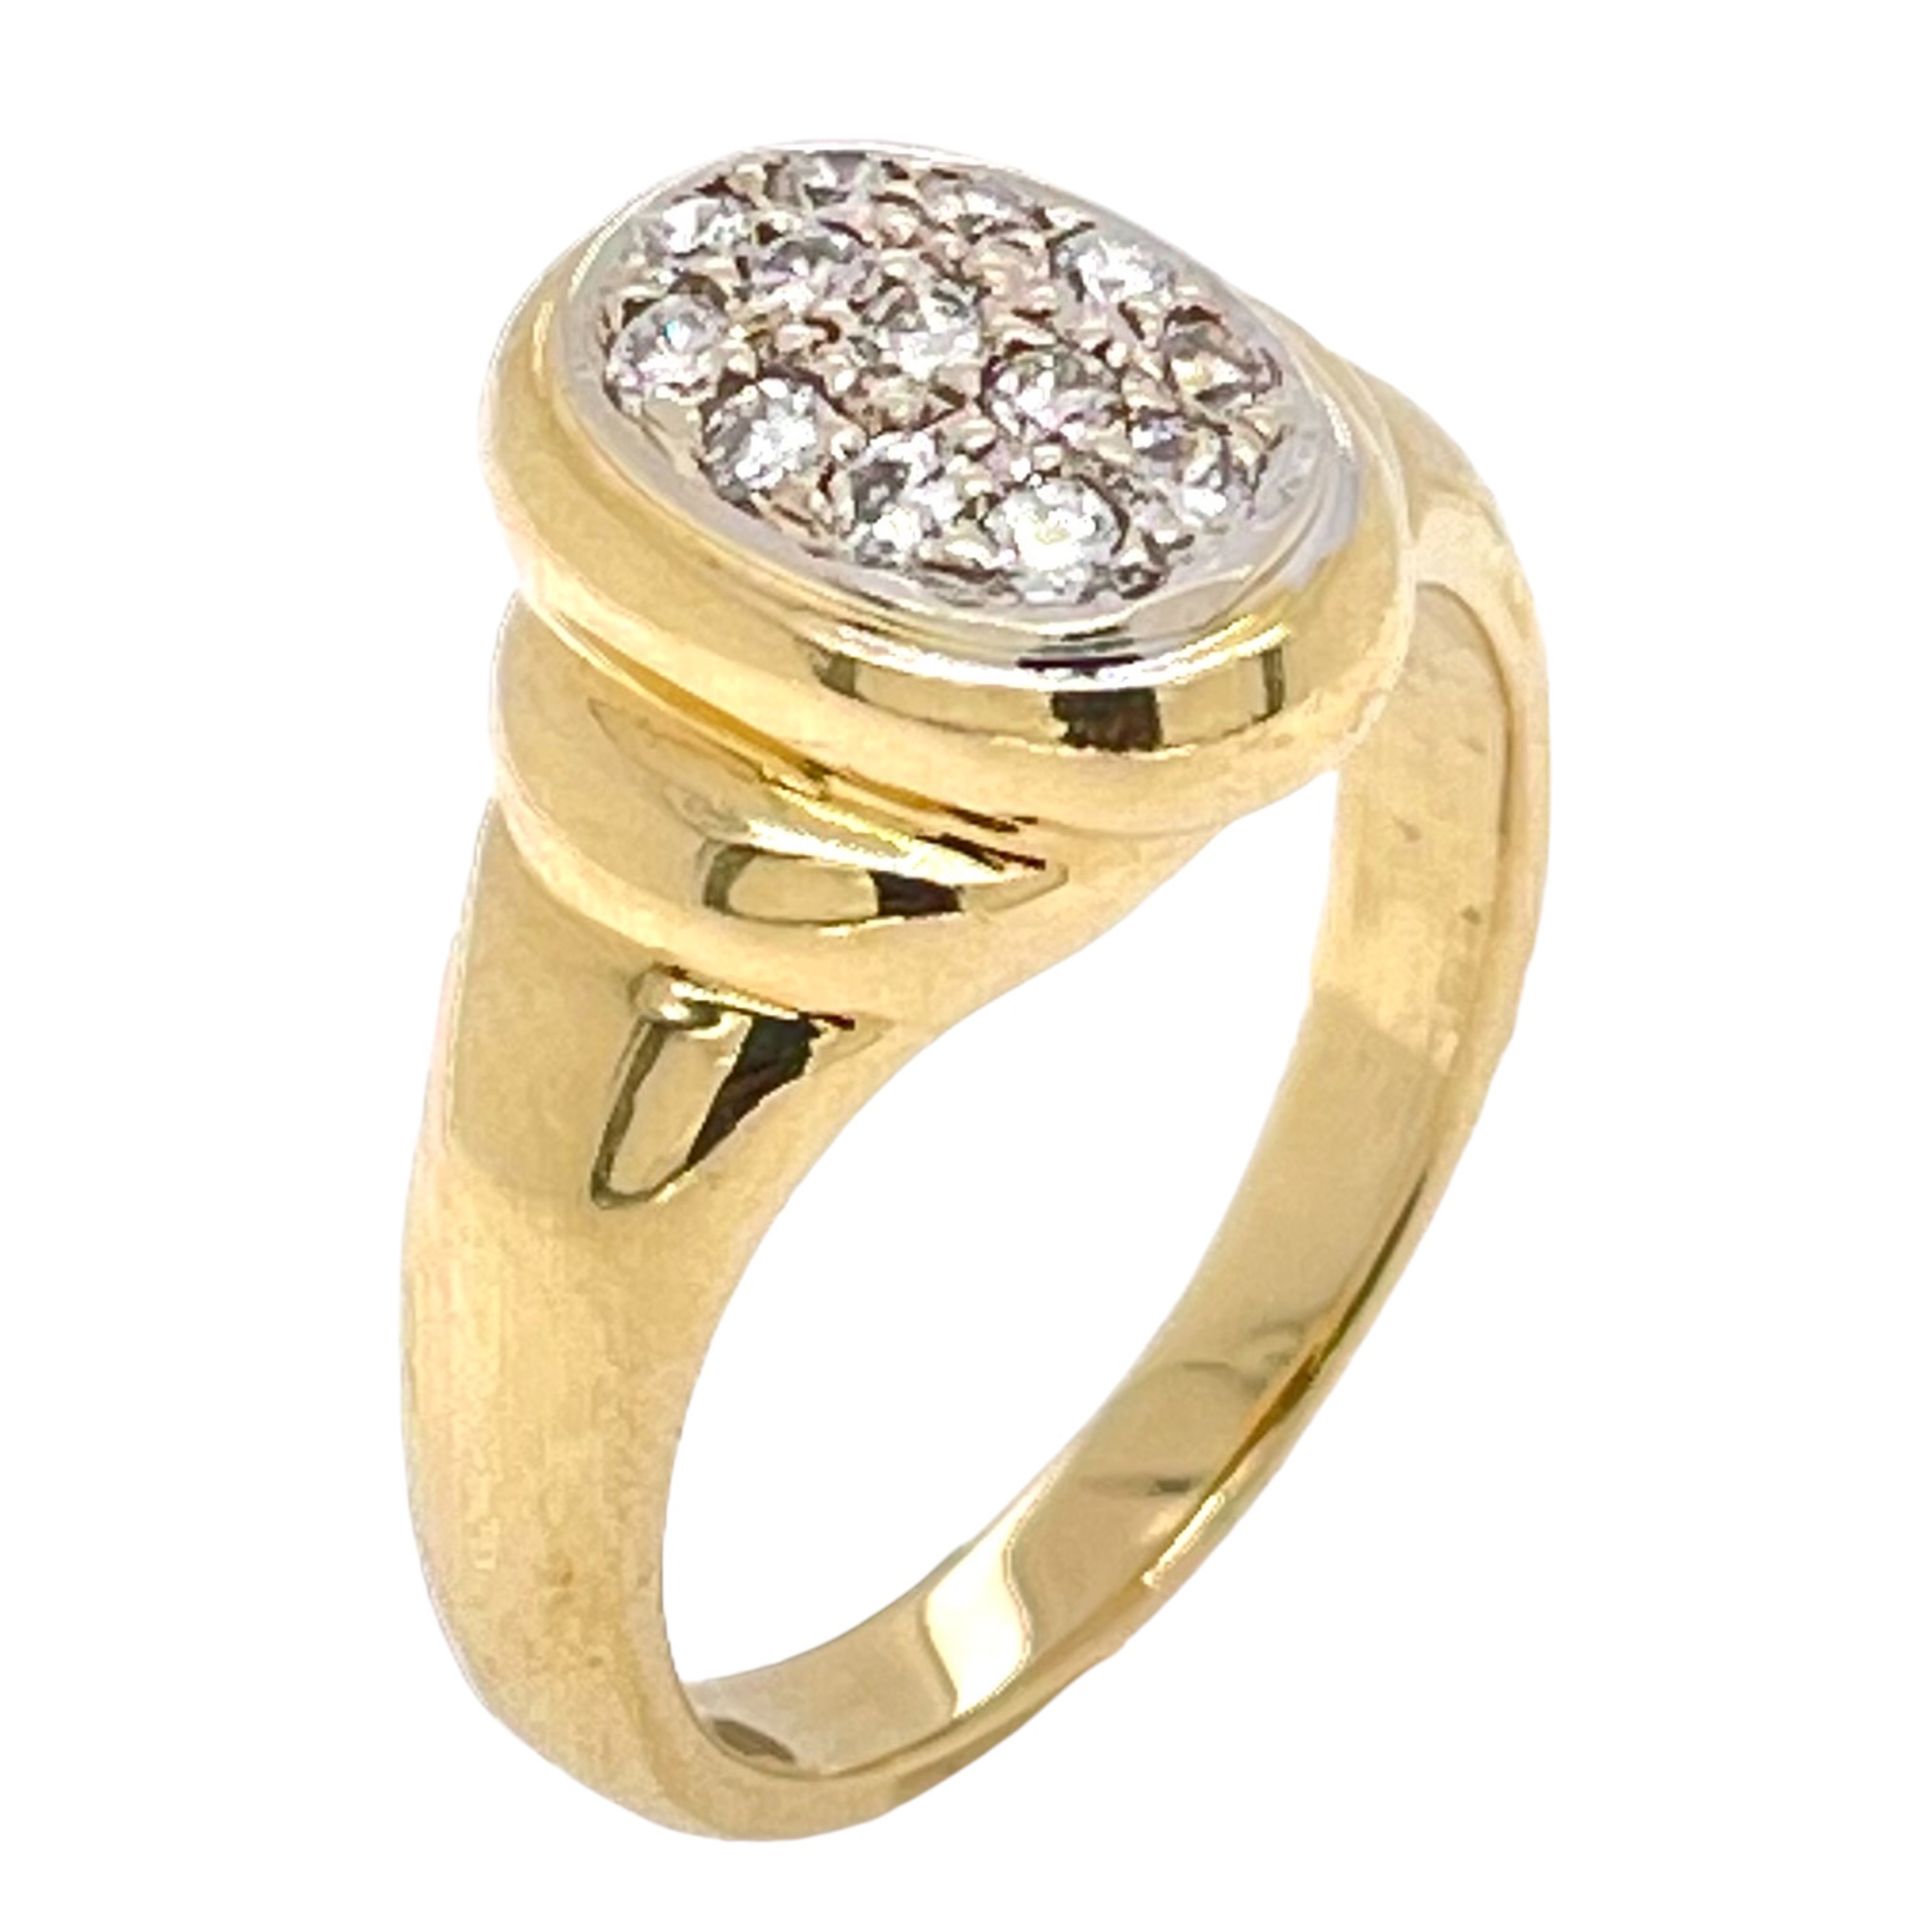 Ring 5,34g 750/- Gelbgold und Weißgold mit 13 Diamanten zus. ca. 0,26 ct., Ringgröße ca. 48